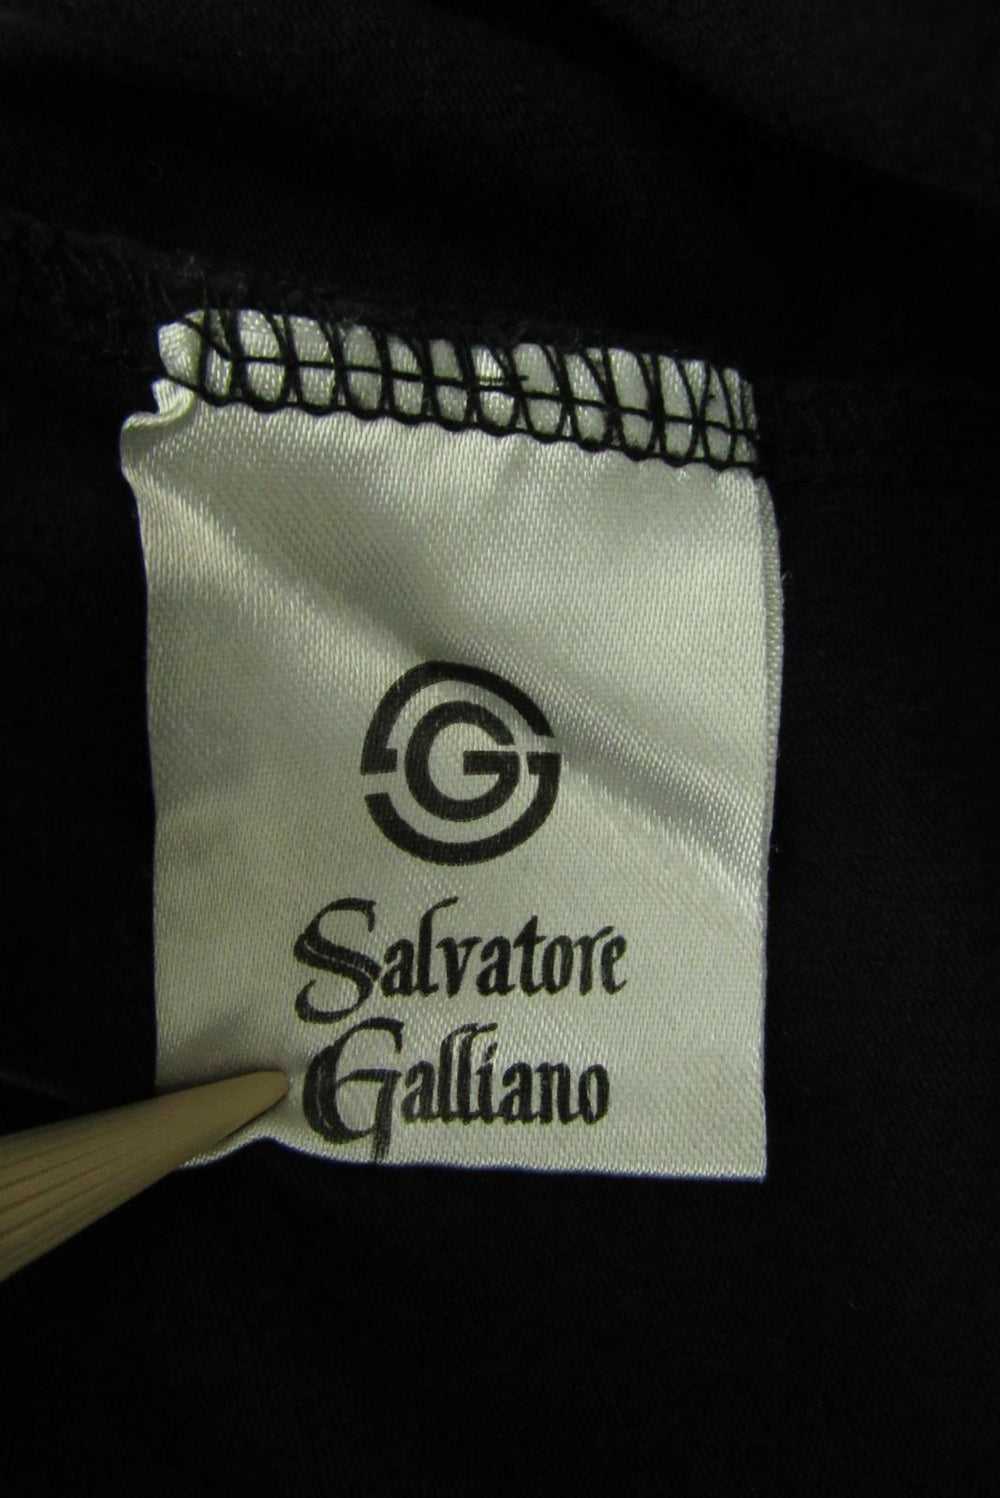 Salvatore Galliano Graphic Tee Shirt - image 4